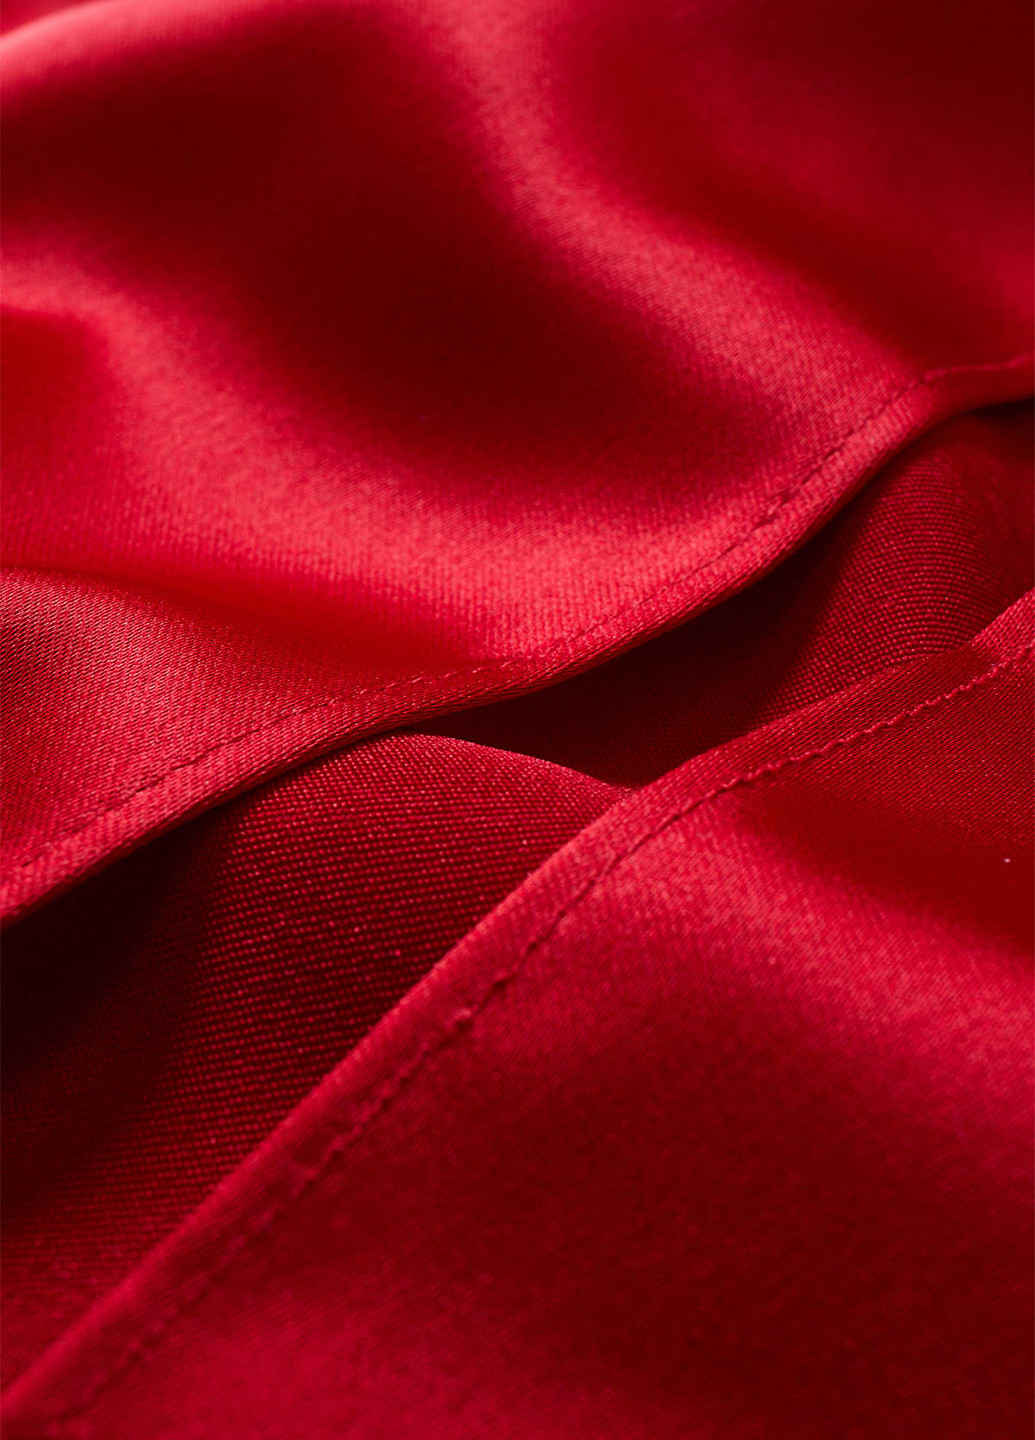 Красное вечернее платье на одно плечо C&A однотонное